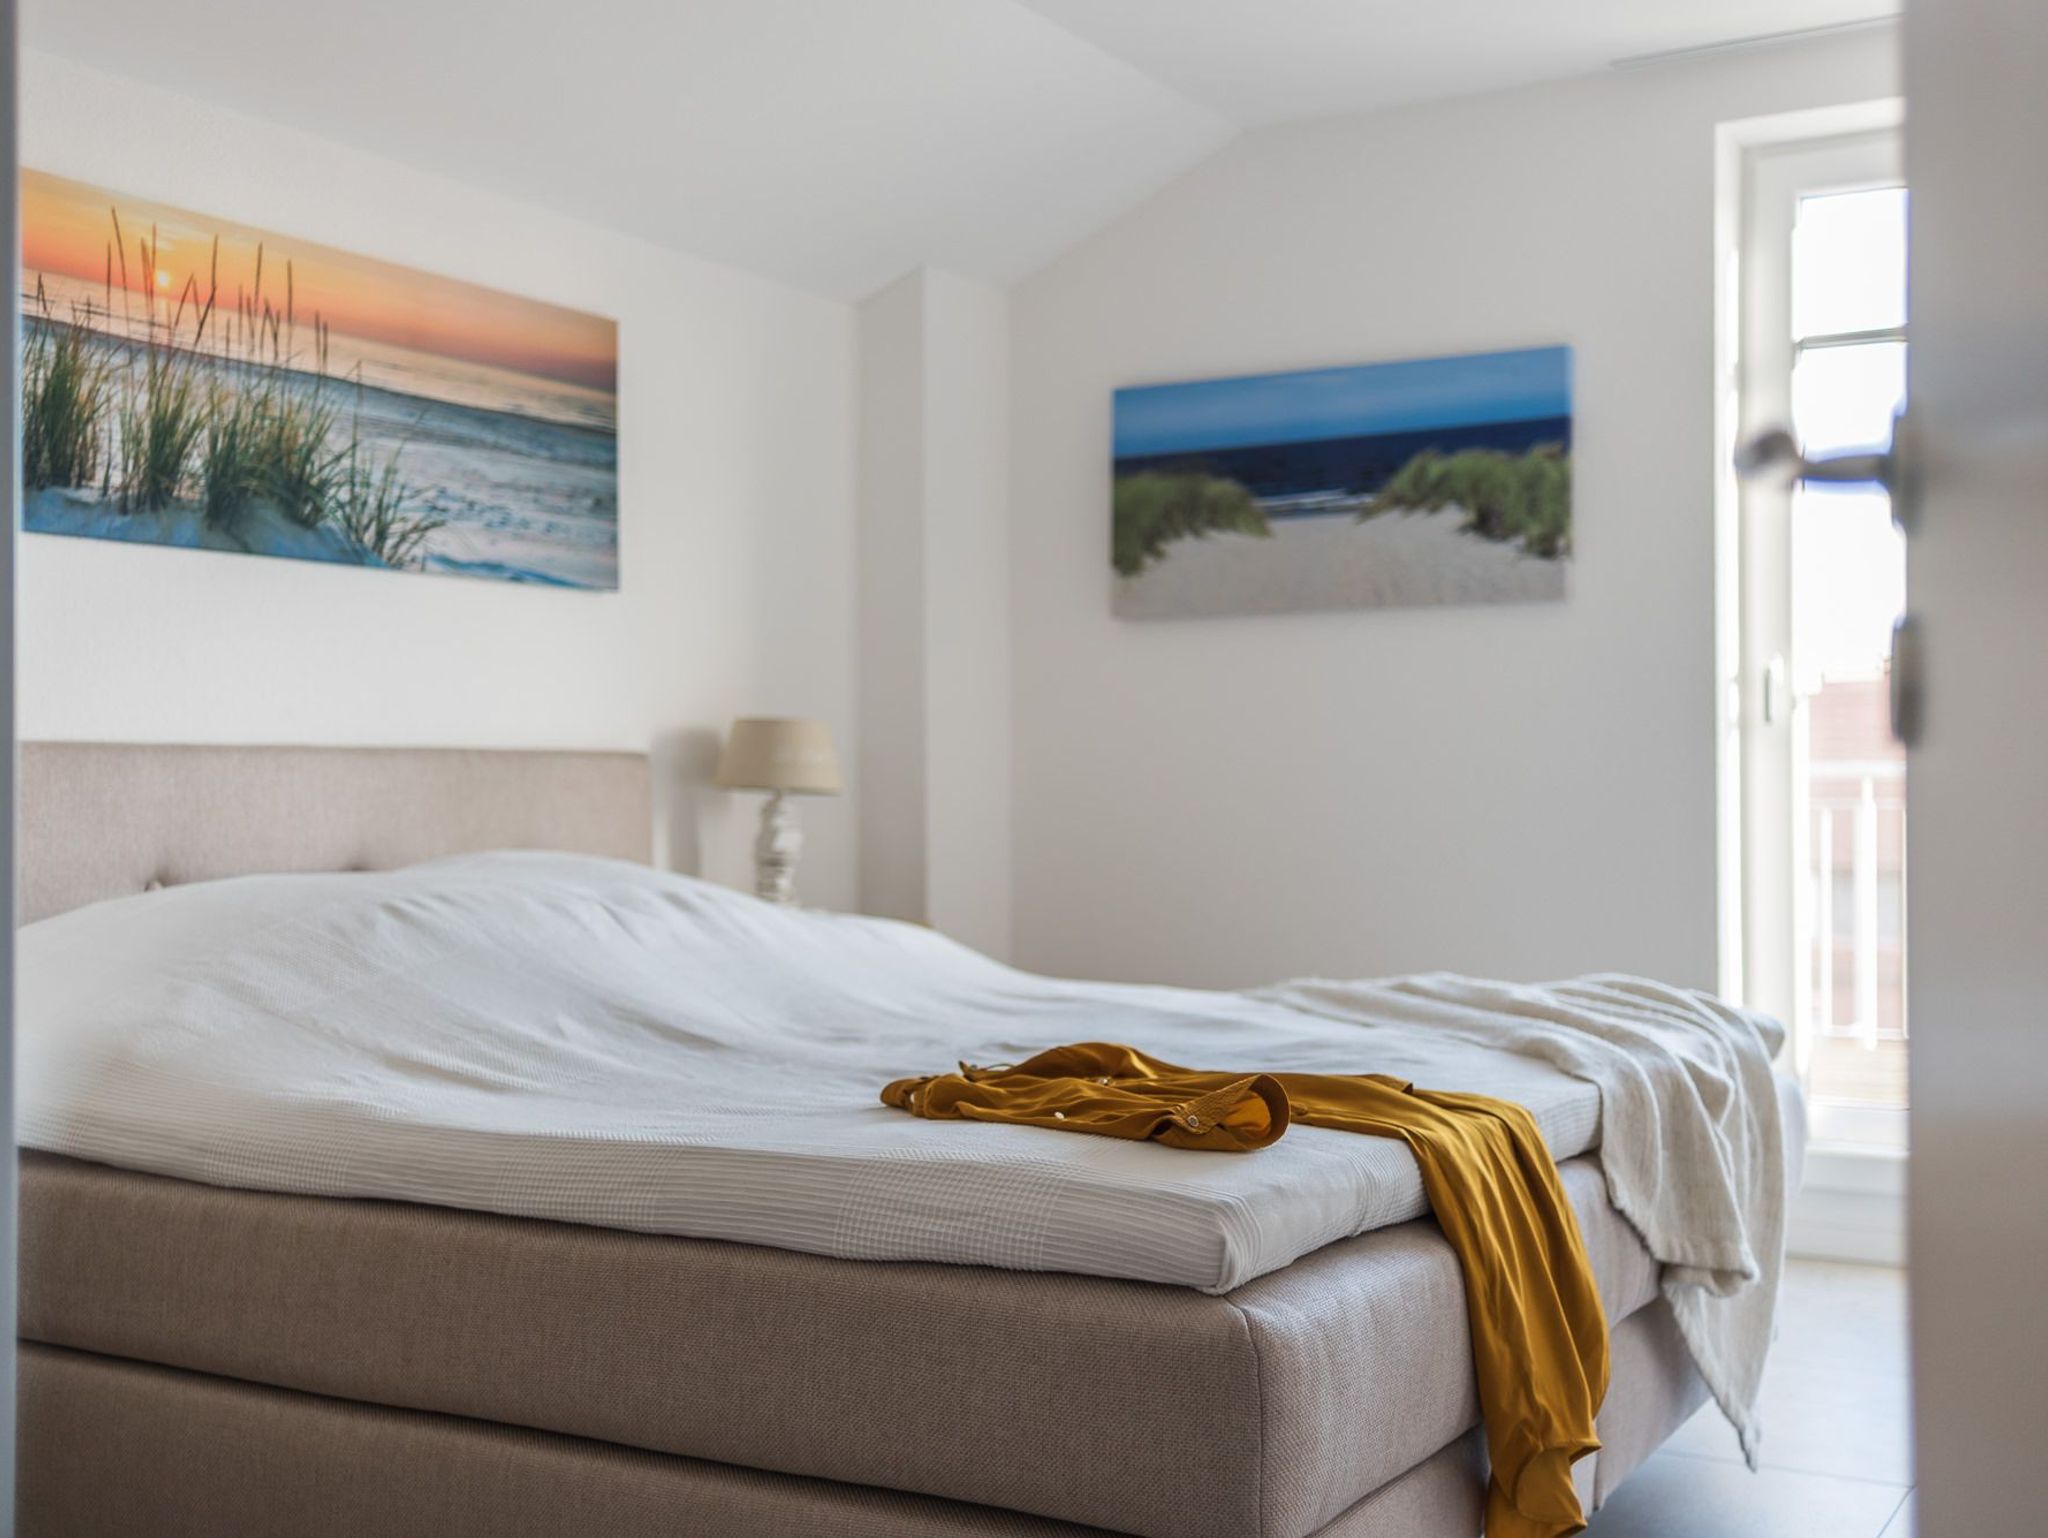 Ferienhaus Ostsee Zierow - Ostsee Strand 500 - Holzferienhäuser - booking - Airbnb - 6 Personen - 1 Wochen buchen